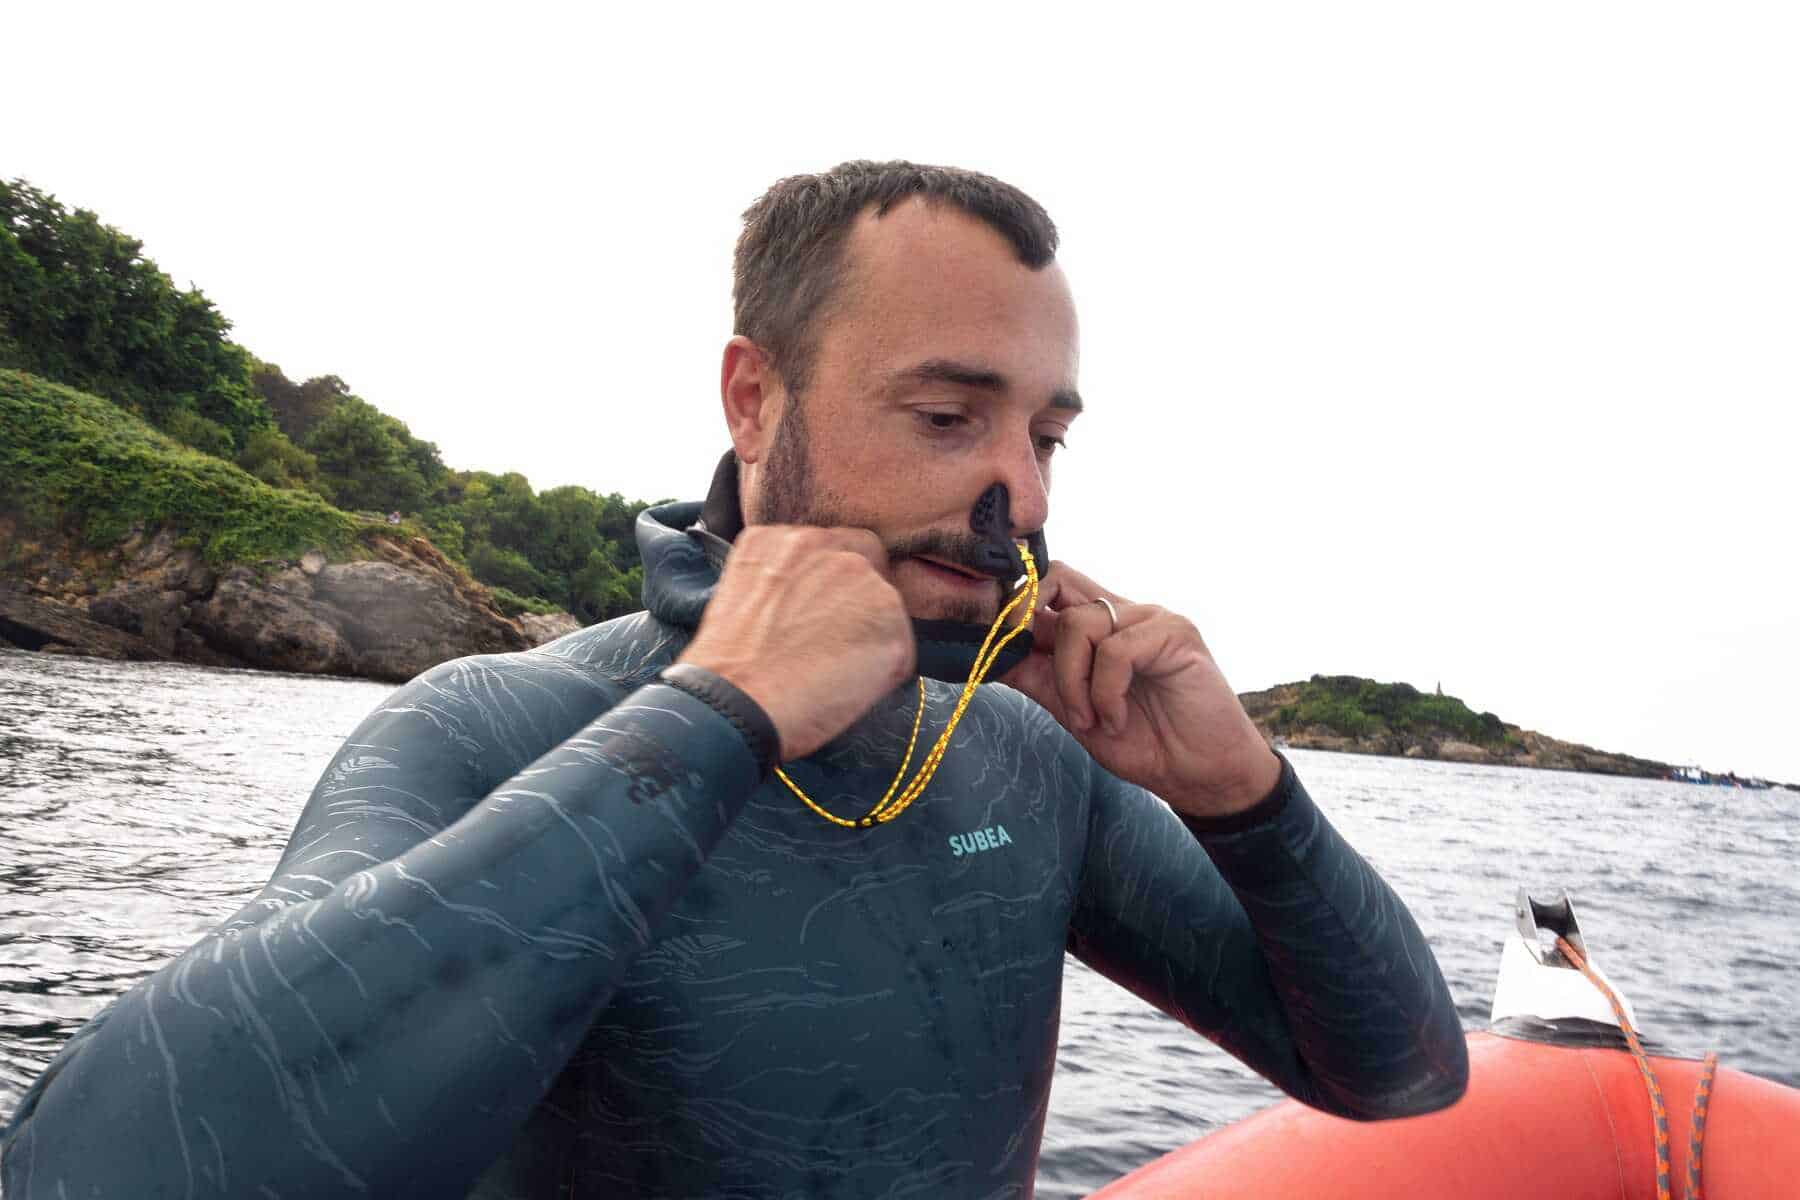 Freediving — nurkowanie na wstrzymanym oddechu. Jak zacząć?